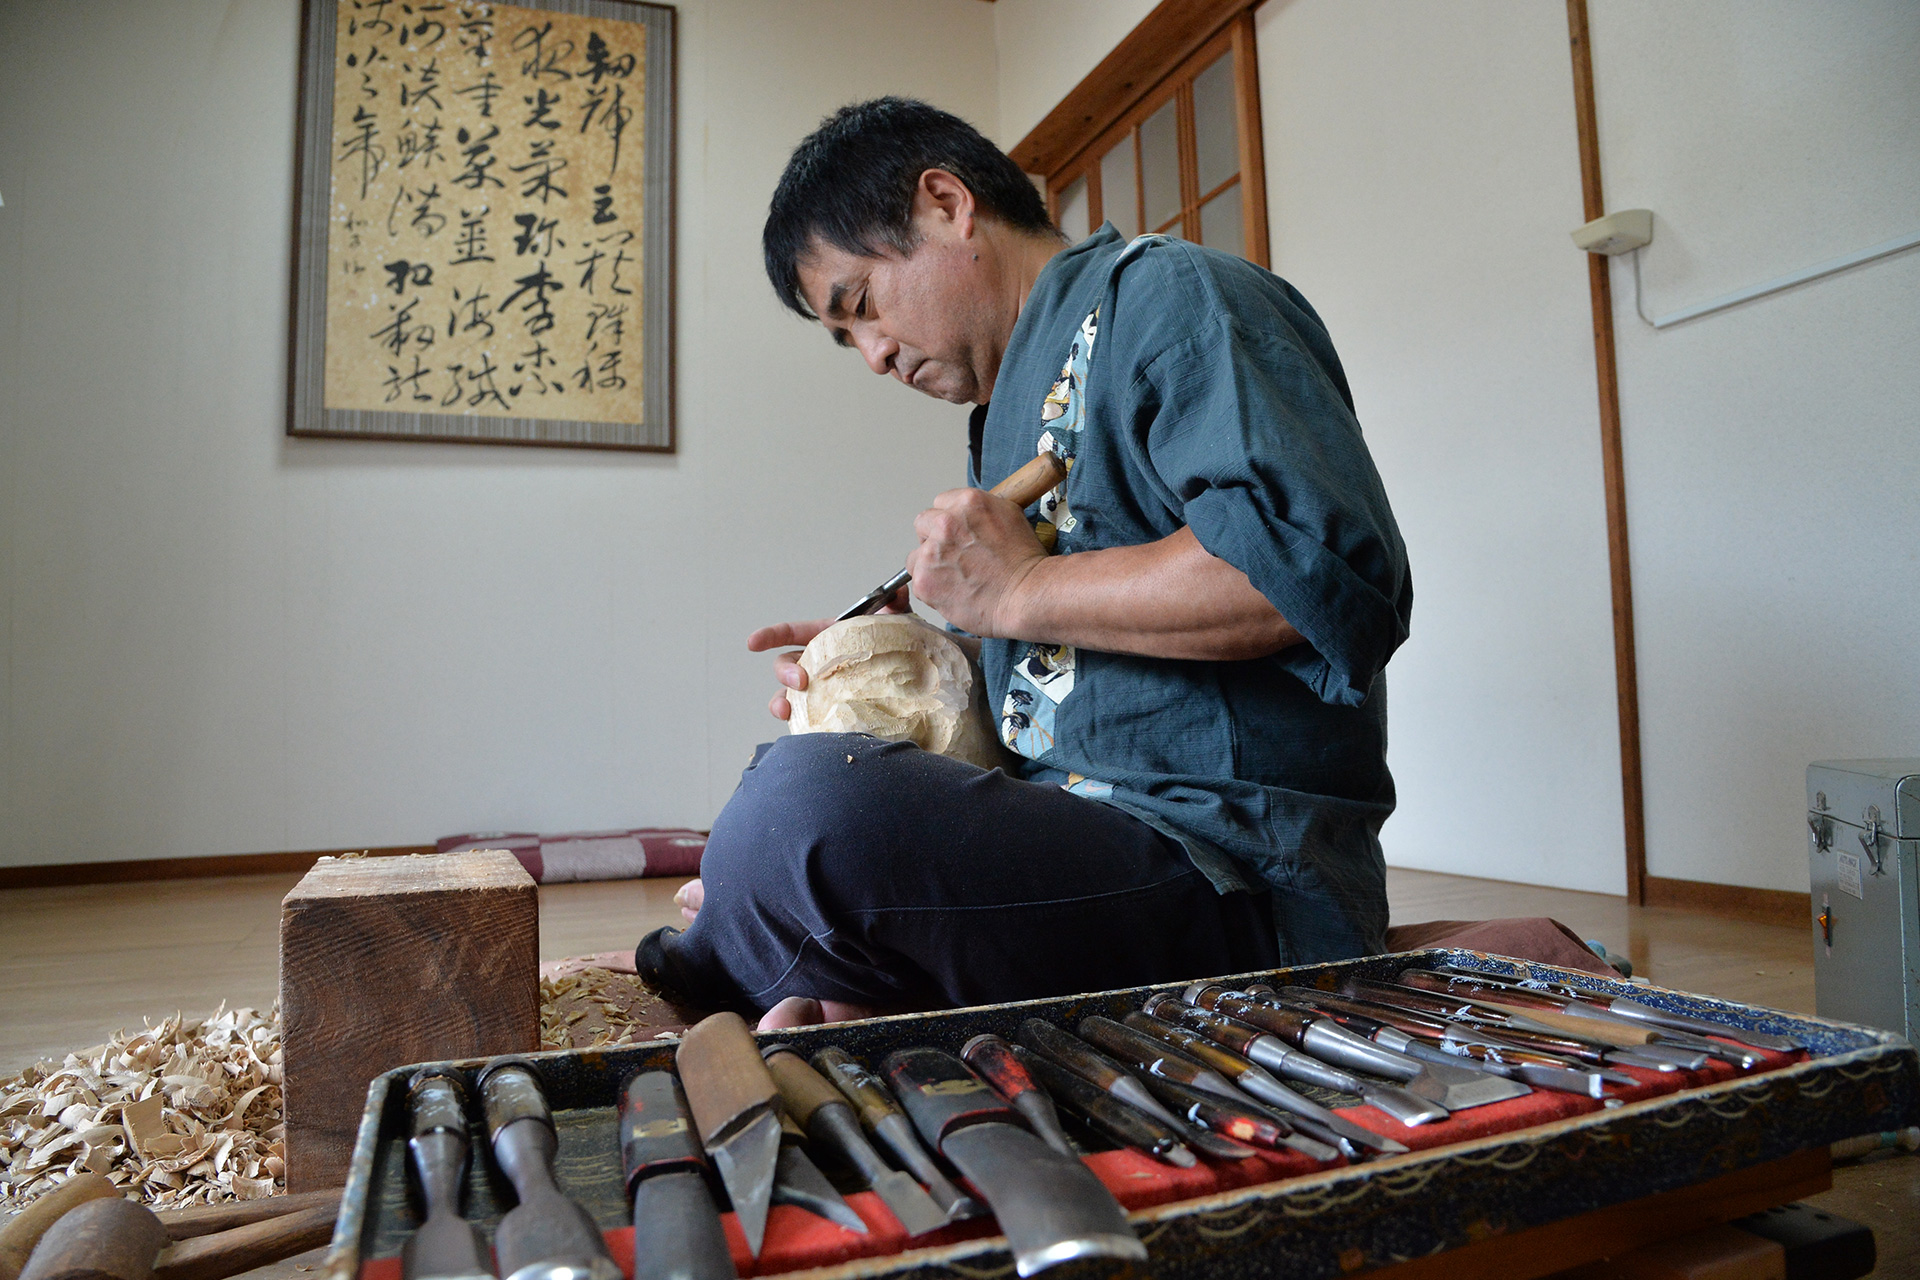 「心を整え、神を迎え出す」 宮崎の「一刻者」伝統工芸の技を守り受け継ぐ職人の物語